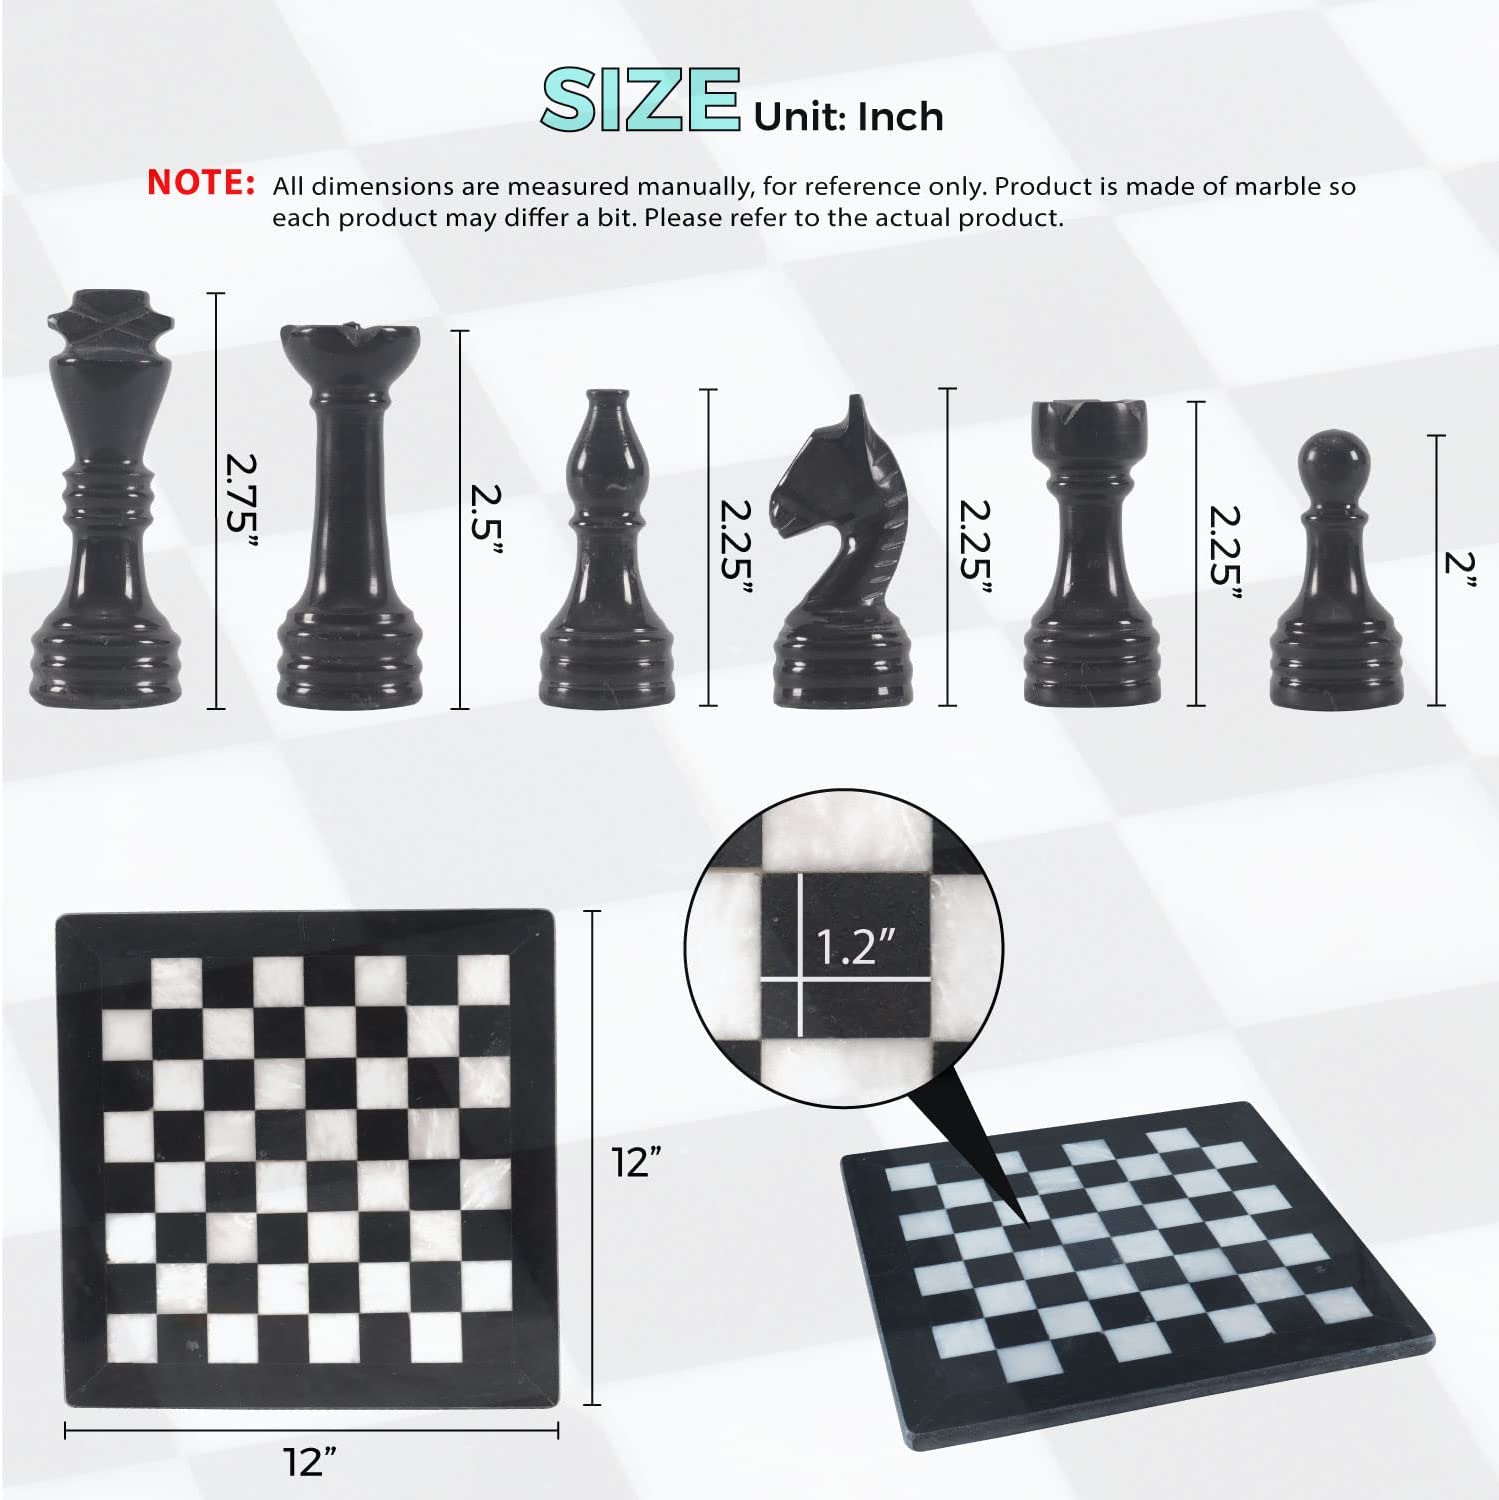 Royale Castle Series Luxury Chess Board Maple & Stripped Ebony